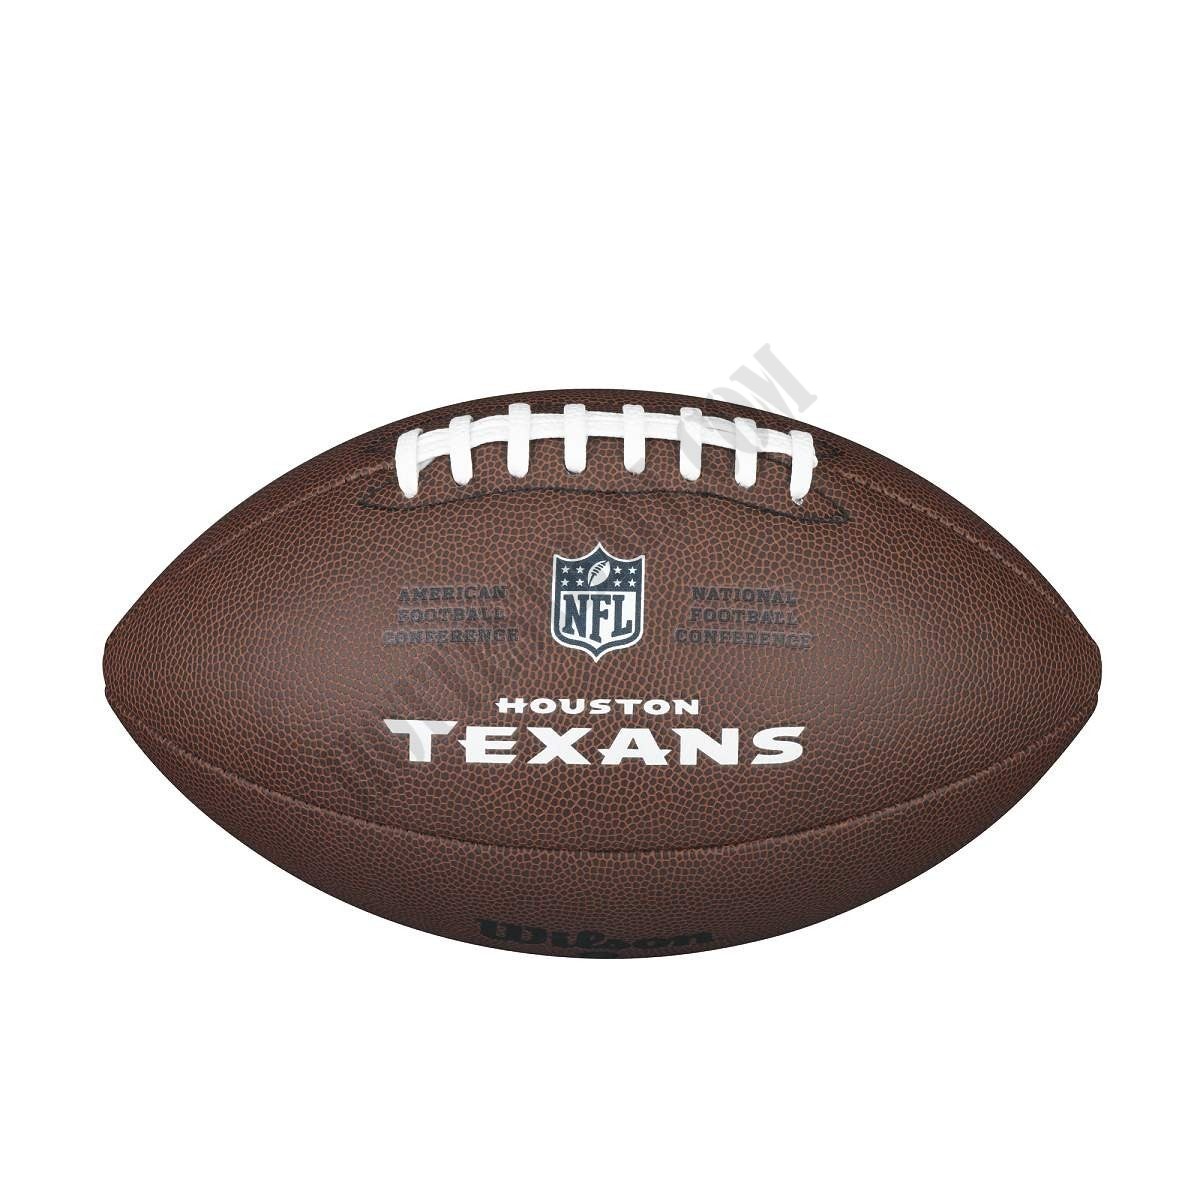 NFL Backyard Legend Football - Houston Texans ● Wilson Promotions - -1